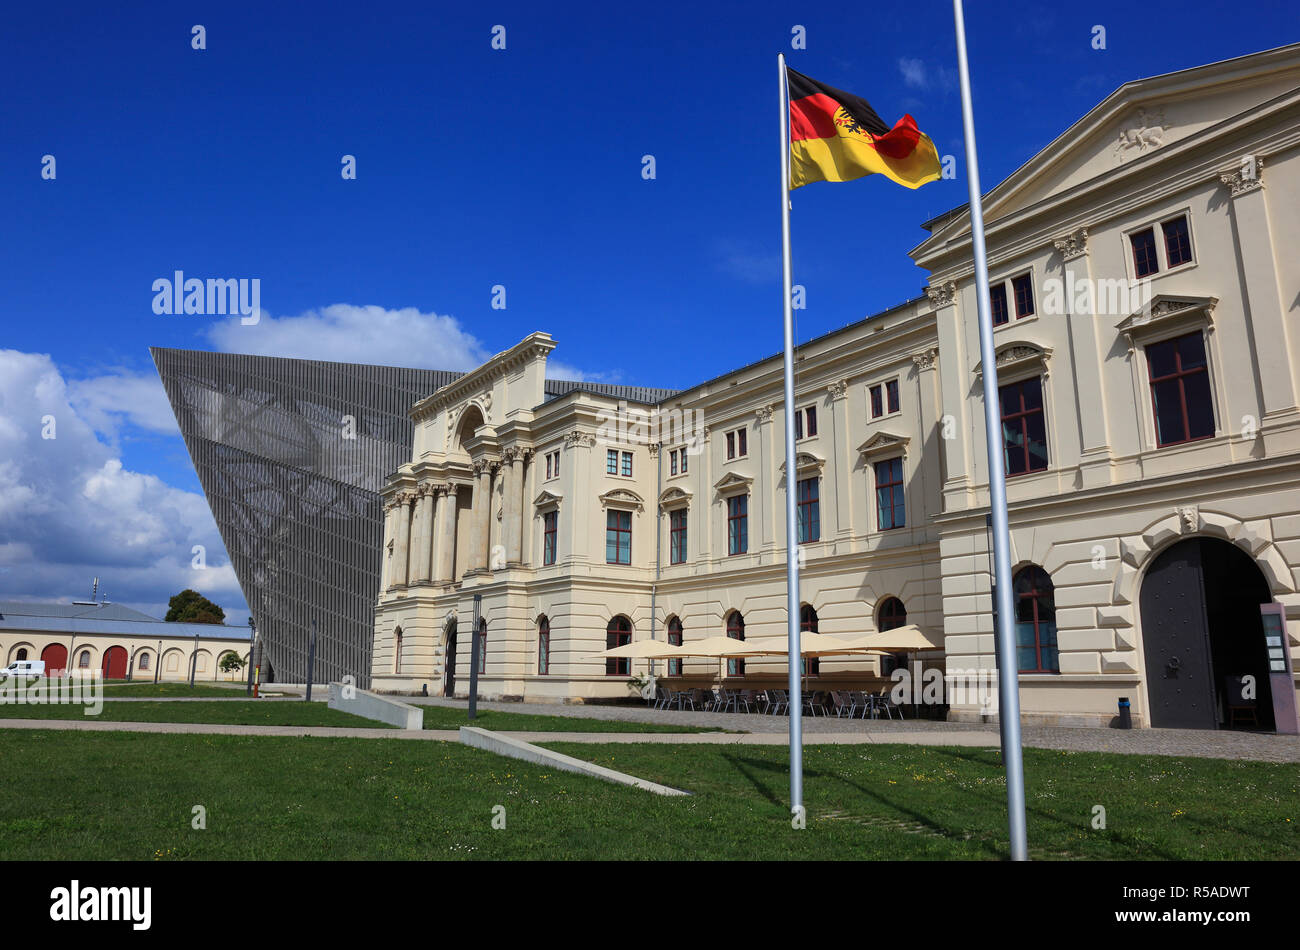 Musée de l'histoire militaire de la Bundeswehr, bâtiment principal avec la sculpture, l'architecte Daniel Libeskind, Dresde, Saxe, Allemagne Banque D'Images